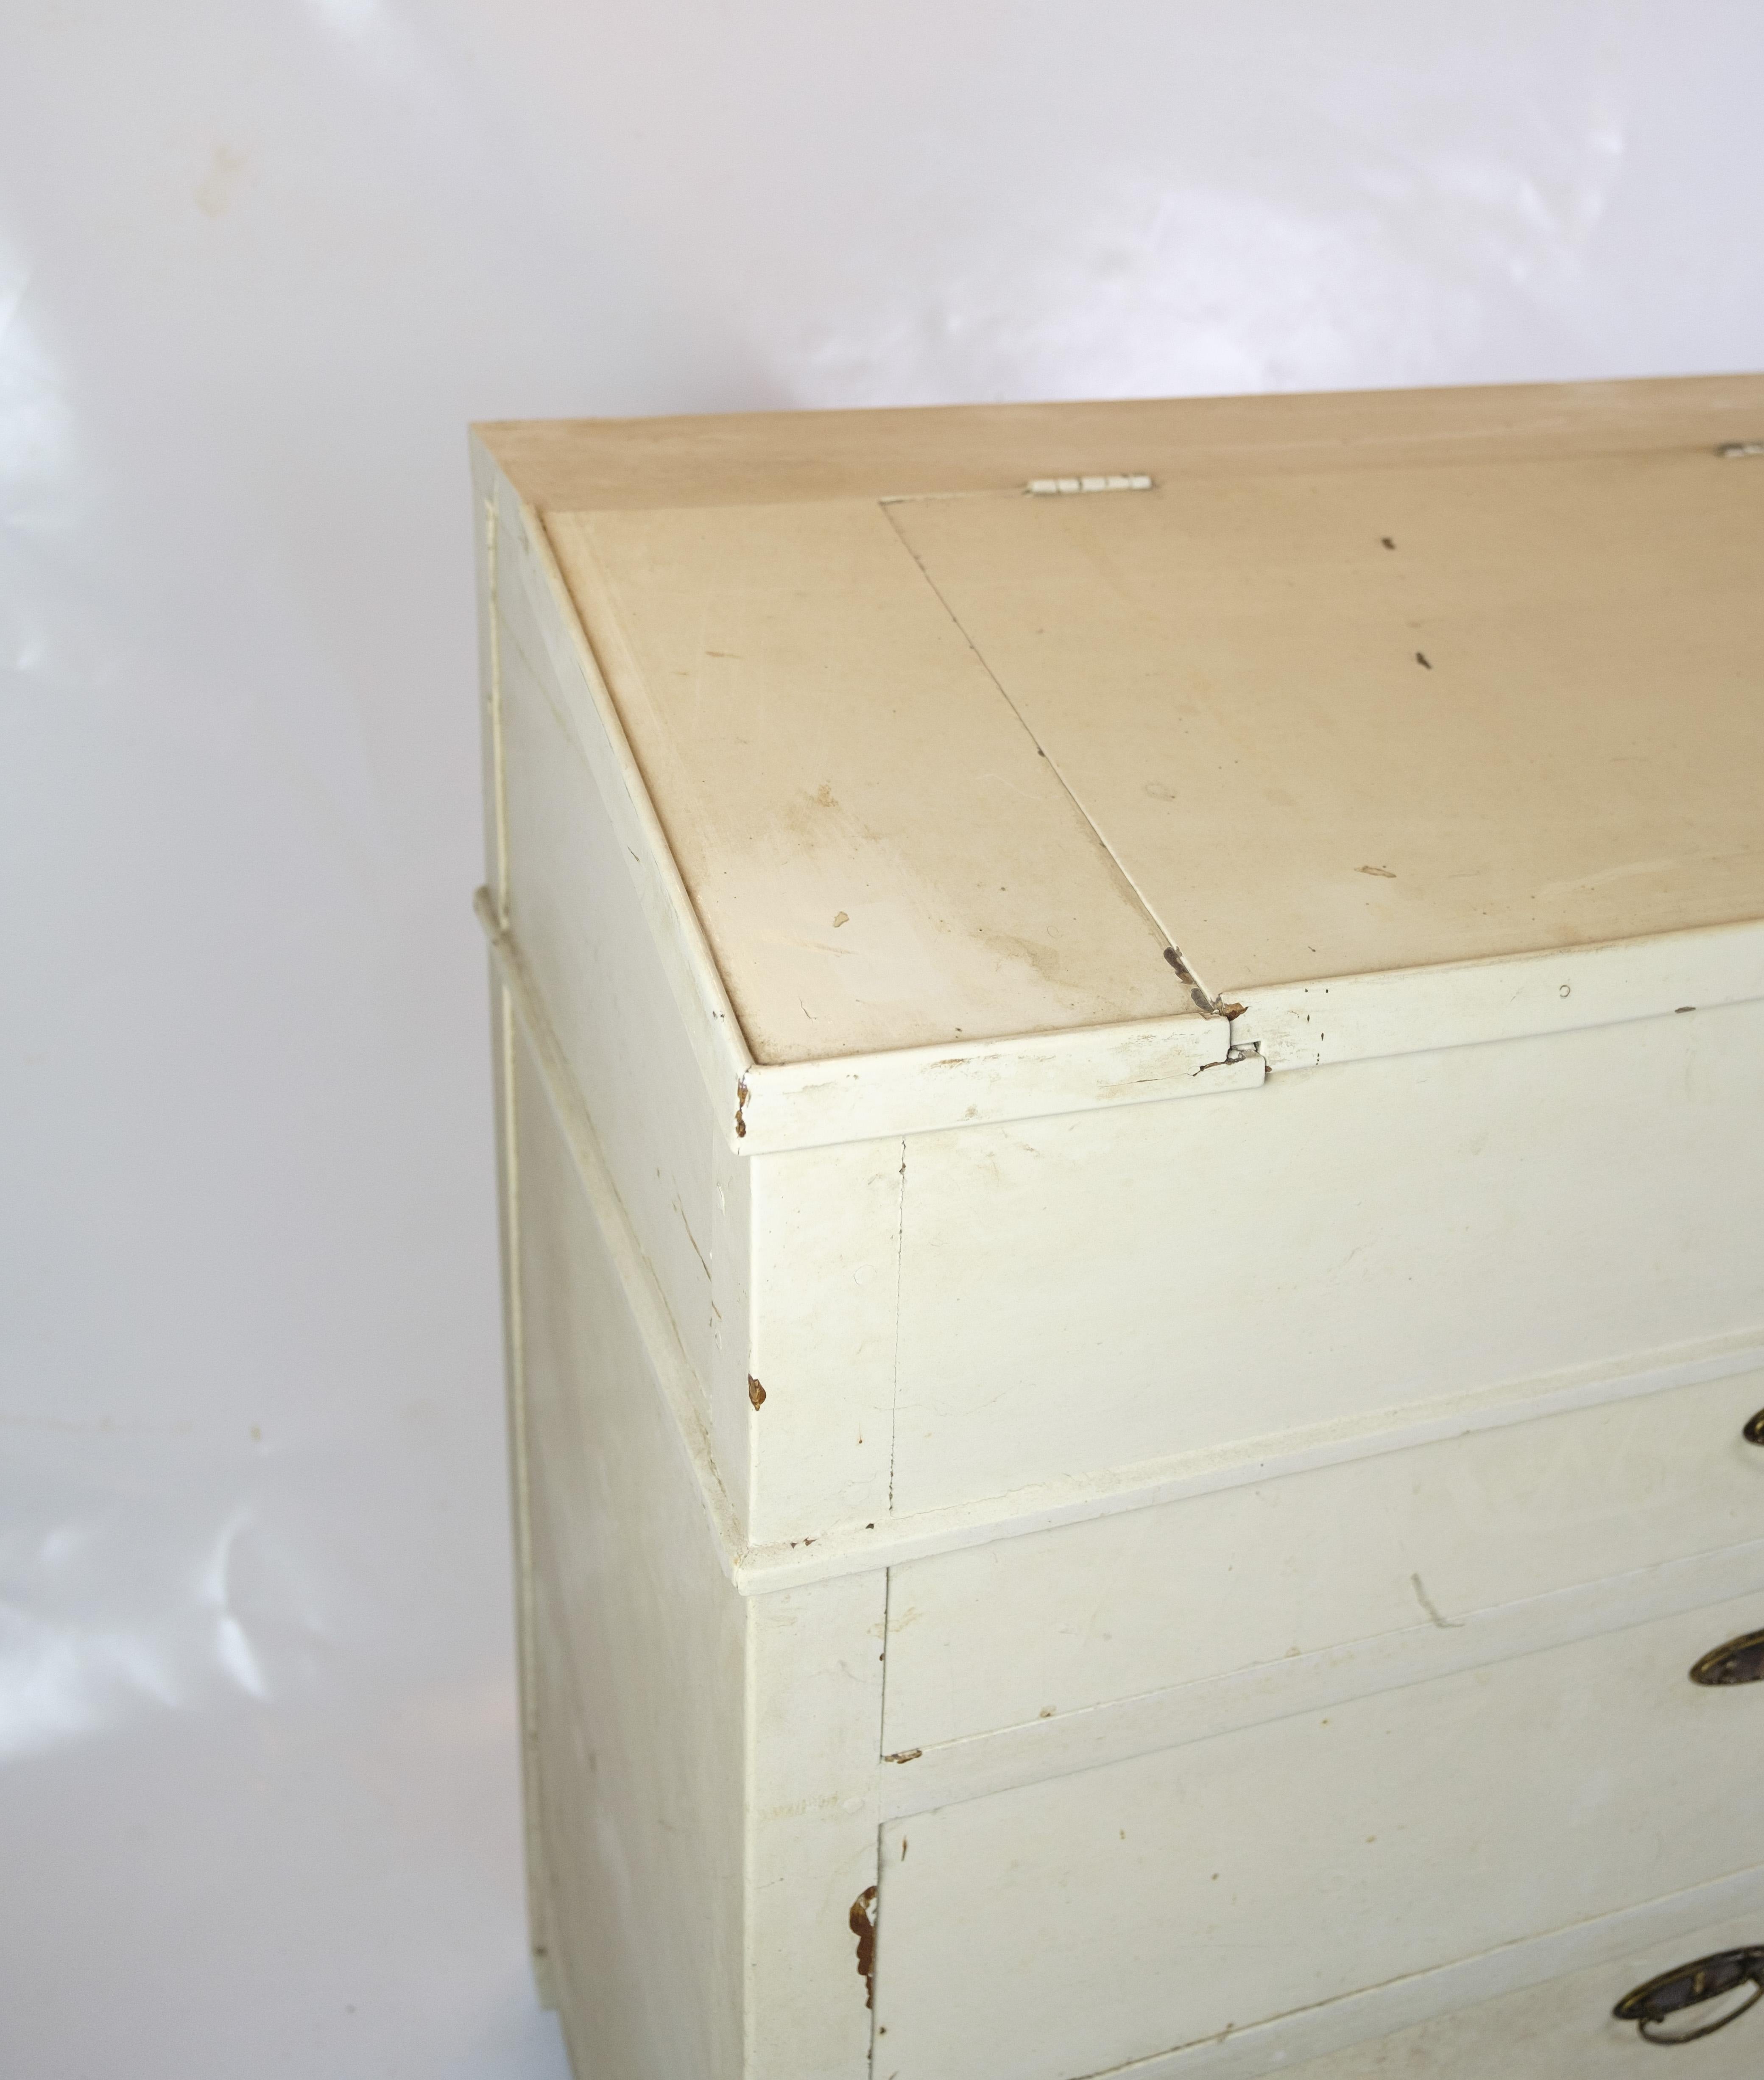 Diese antike Kommode/Schreibtisch aus der Zeit um 1890 ist ein beeindruckendes Stück Möbelgeschichte. Mit seiner weiß lackierten Oberfläche strahlt er zeitlose Eleganz und Charme aus. Die fünf geräumigen Schubladen bieten praktischen Stauraum für